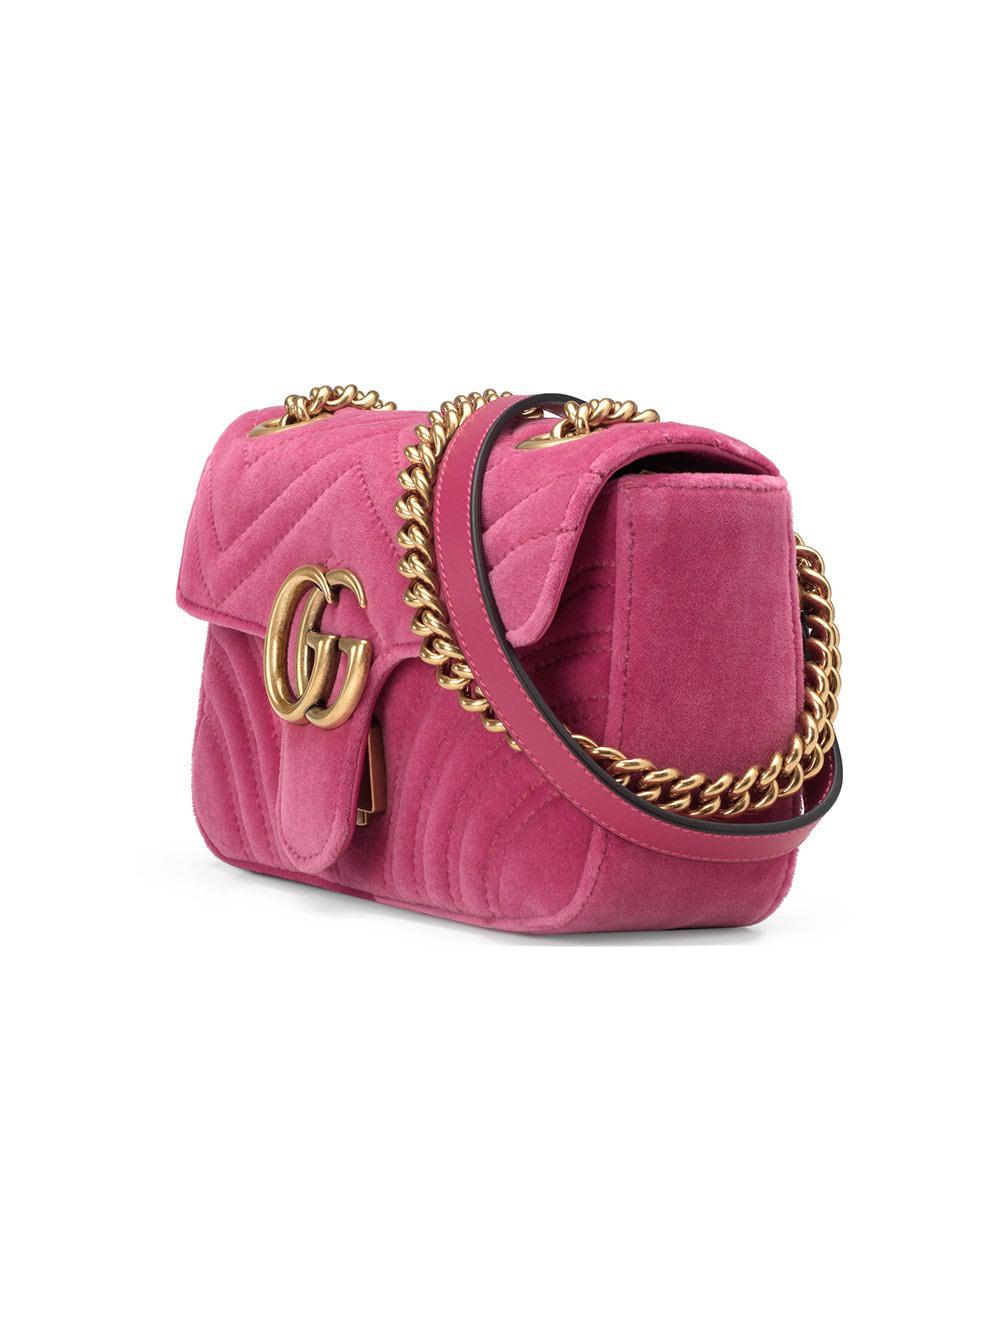 Gg marmont velvet handbag Gucci Red in Velvet - 34143578